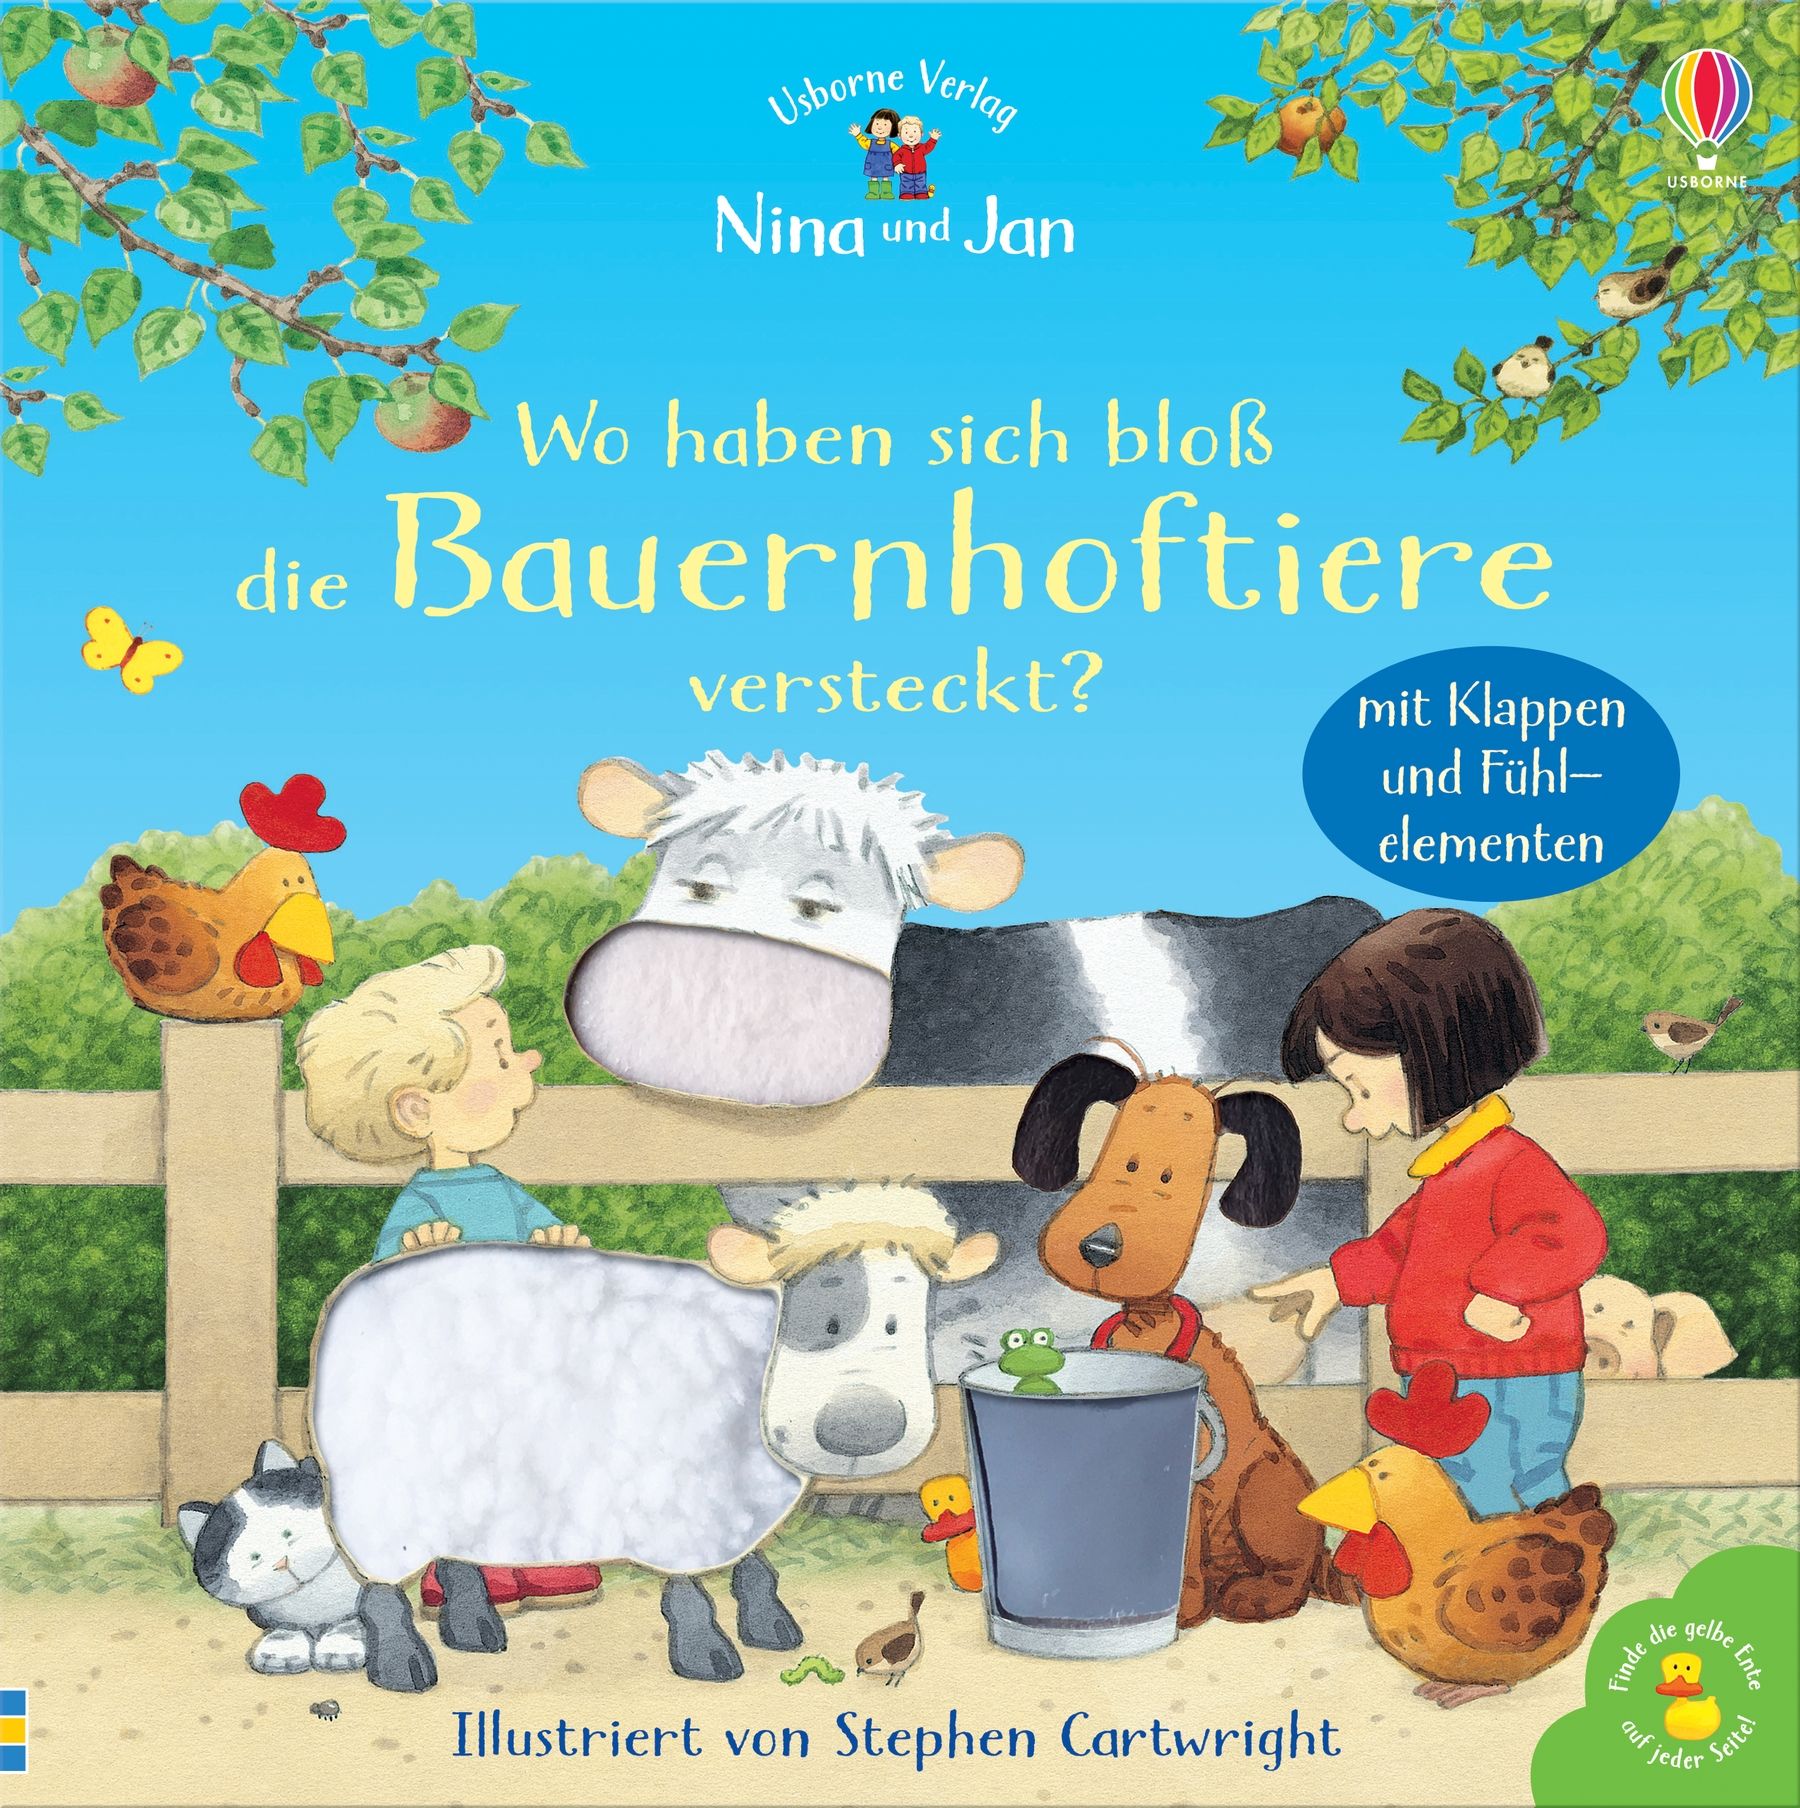 Buchcover "Nina und Jan - Wo haben sich bloß die Bauernhoftiere versteckt?"